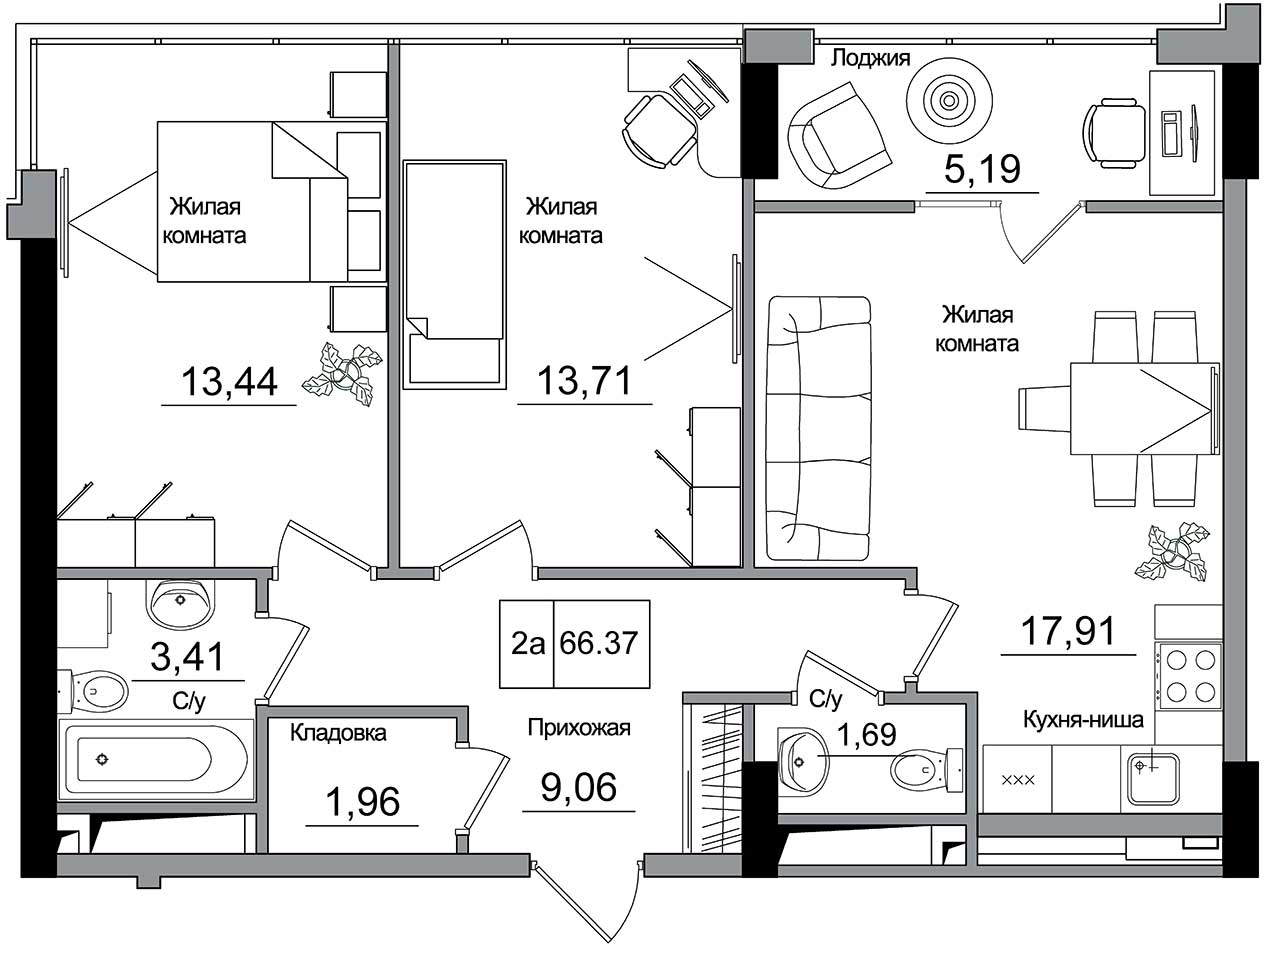 Планування 2-к квартира площею 66.37м2, AB-16-11/00006.